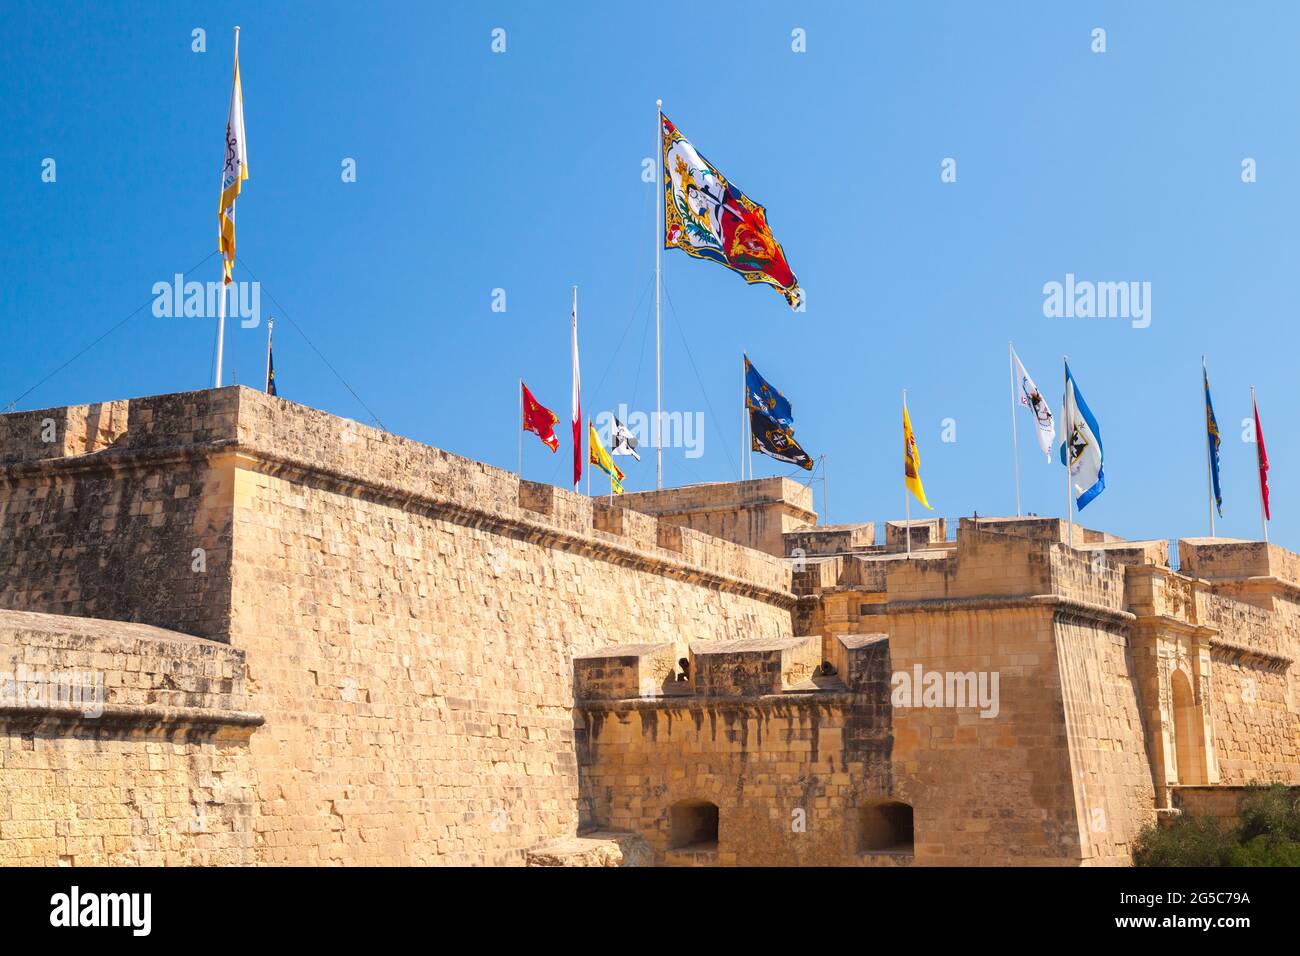 Farbenfrohe Fahnen sind an den Wänden der Rüstkammer der Ritter von Malta angebracht. Birgu, Malta Stockfoto